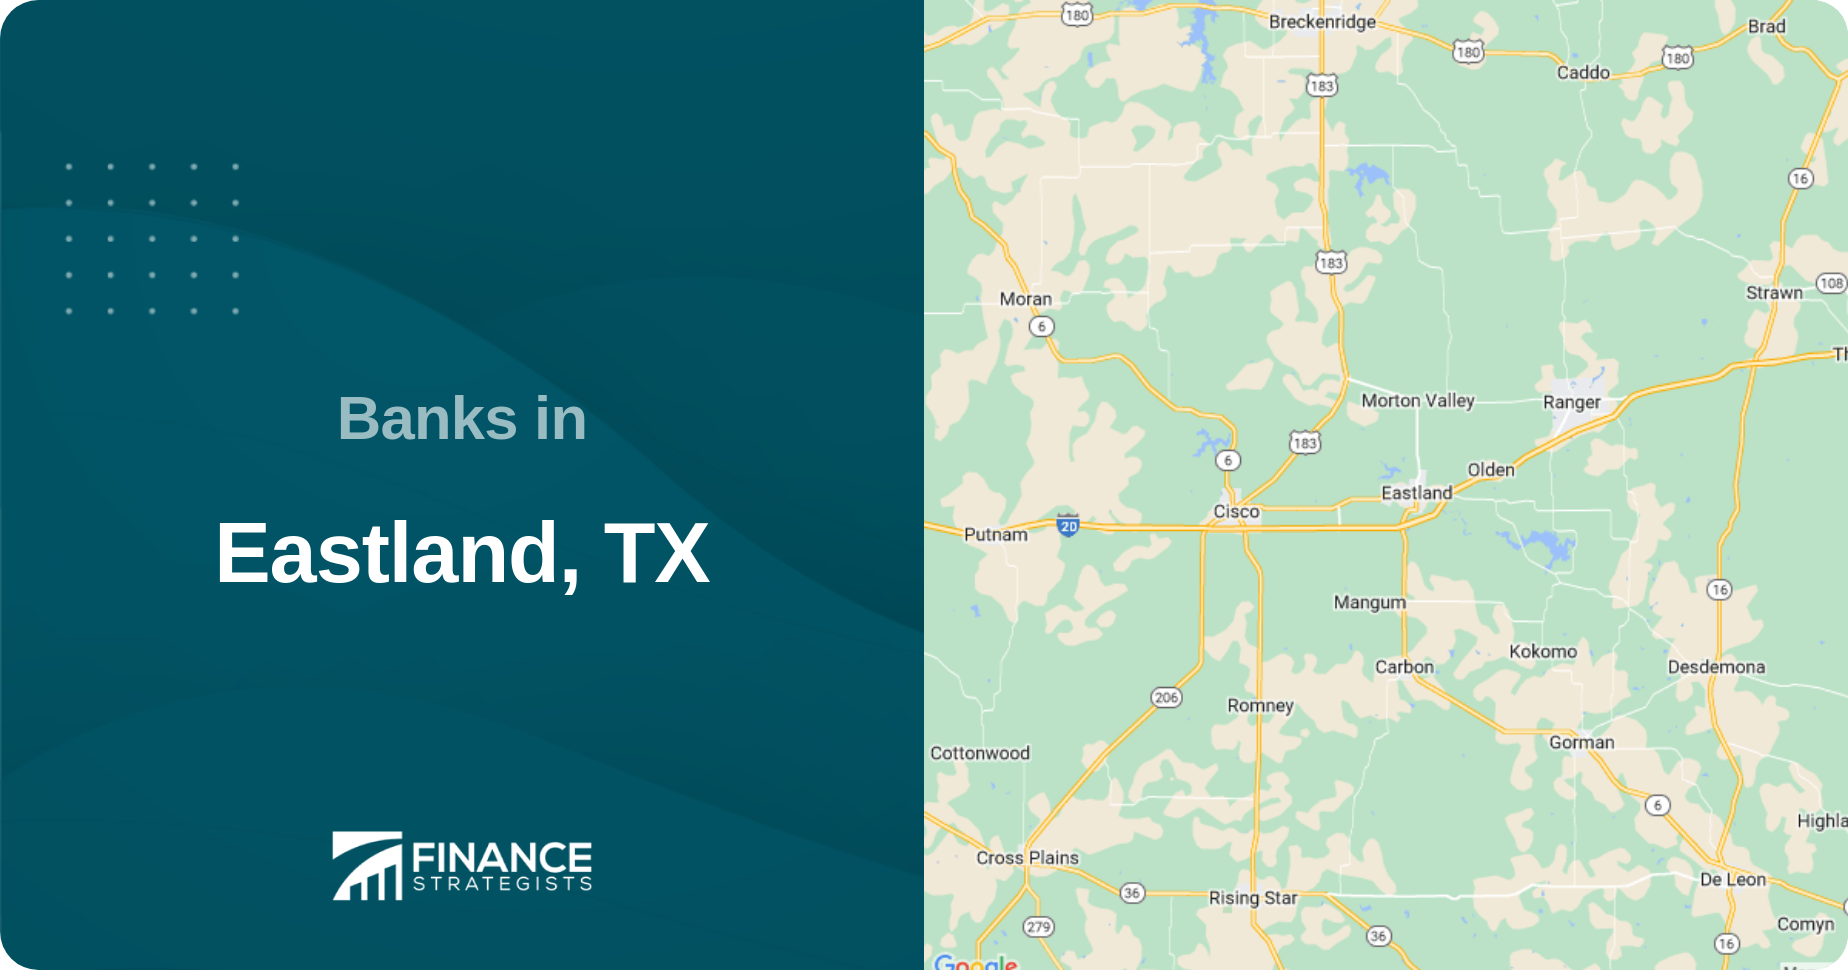 Banks in Eastland, TX